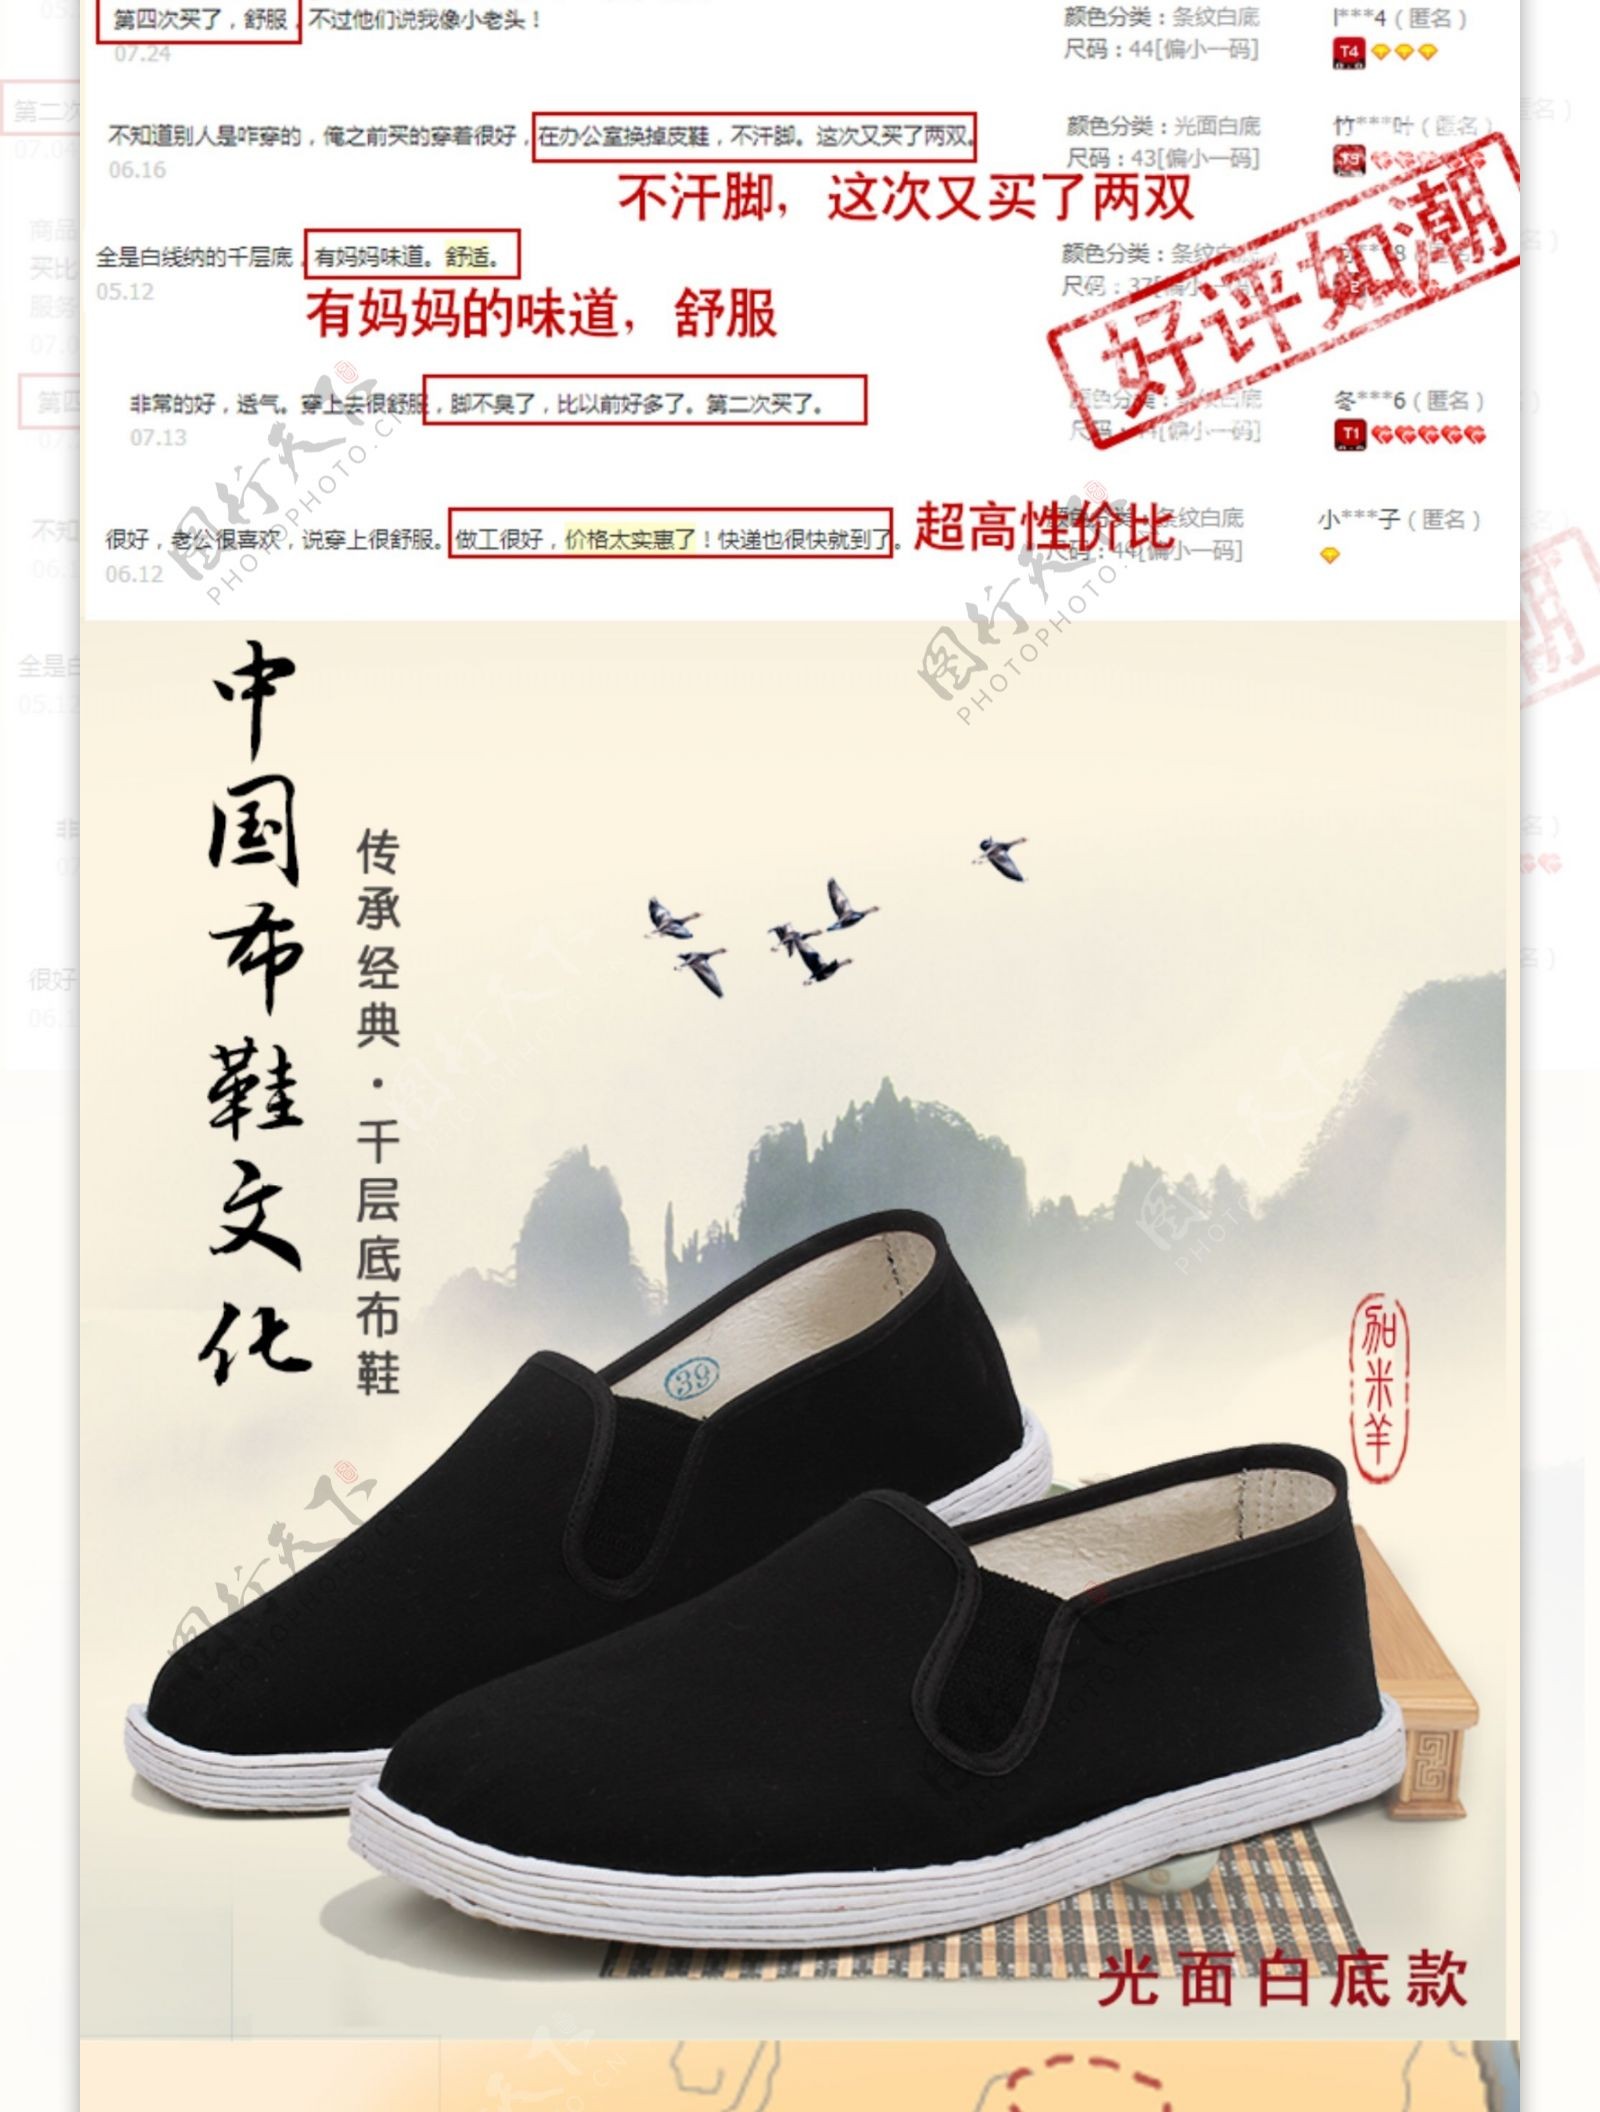 古典中国风千层底布鞋详情页